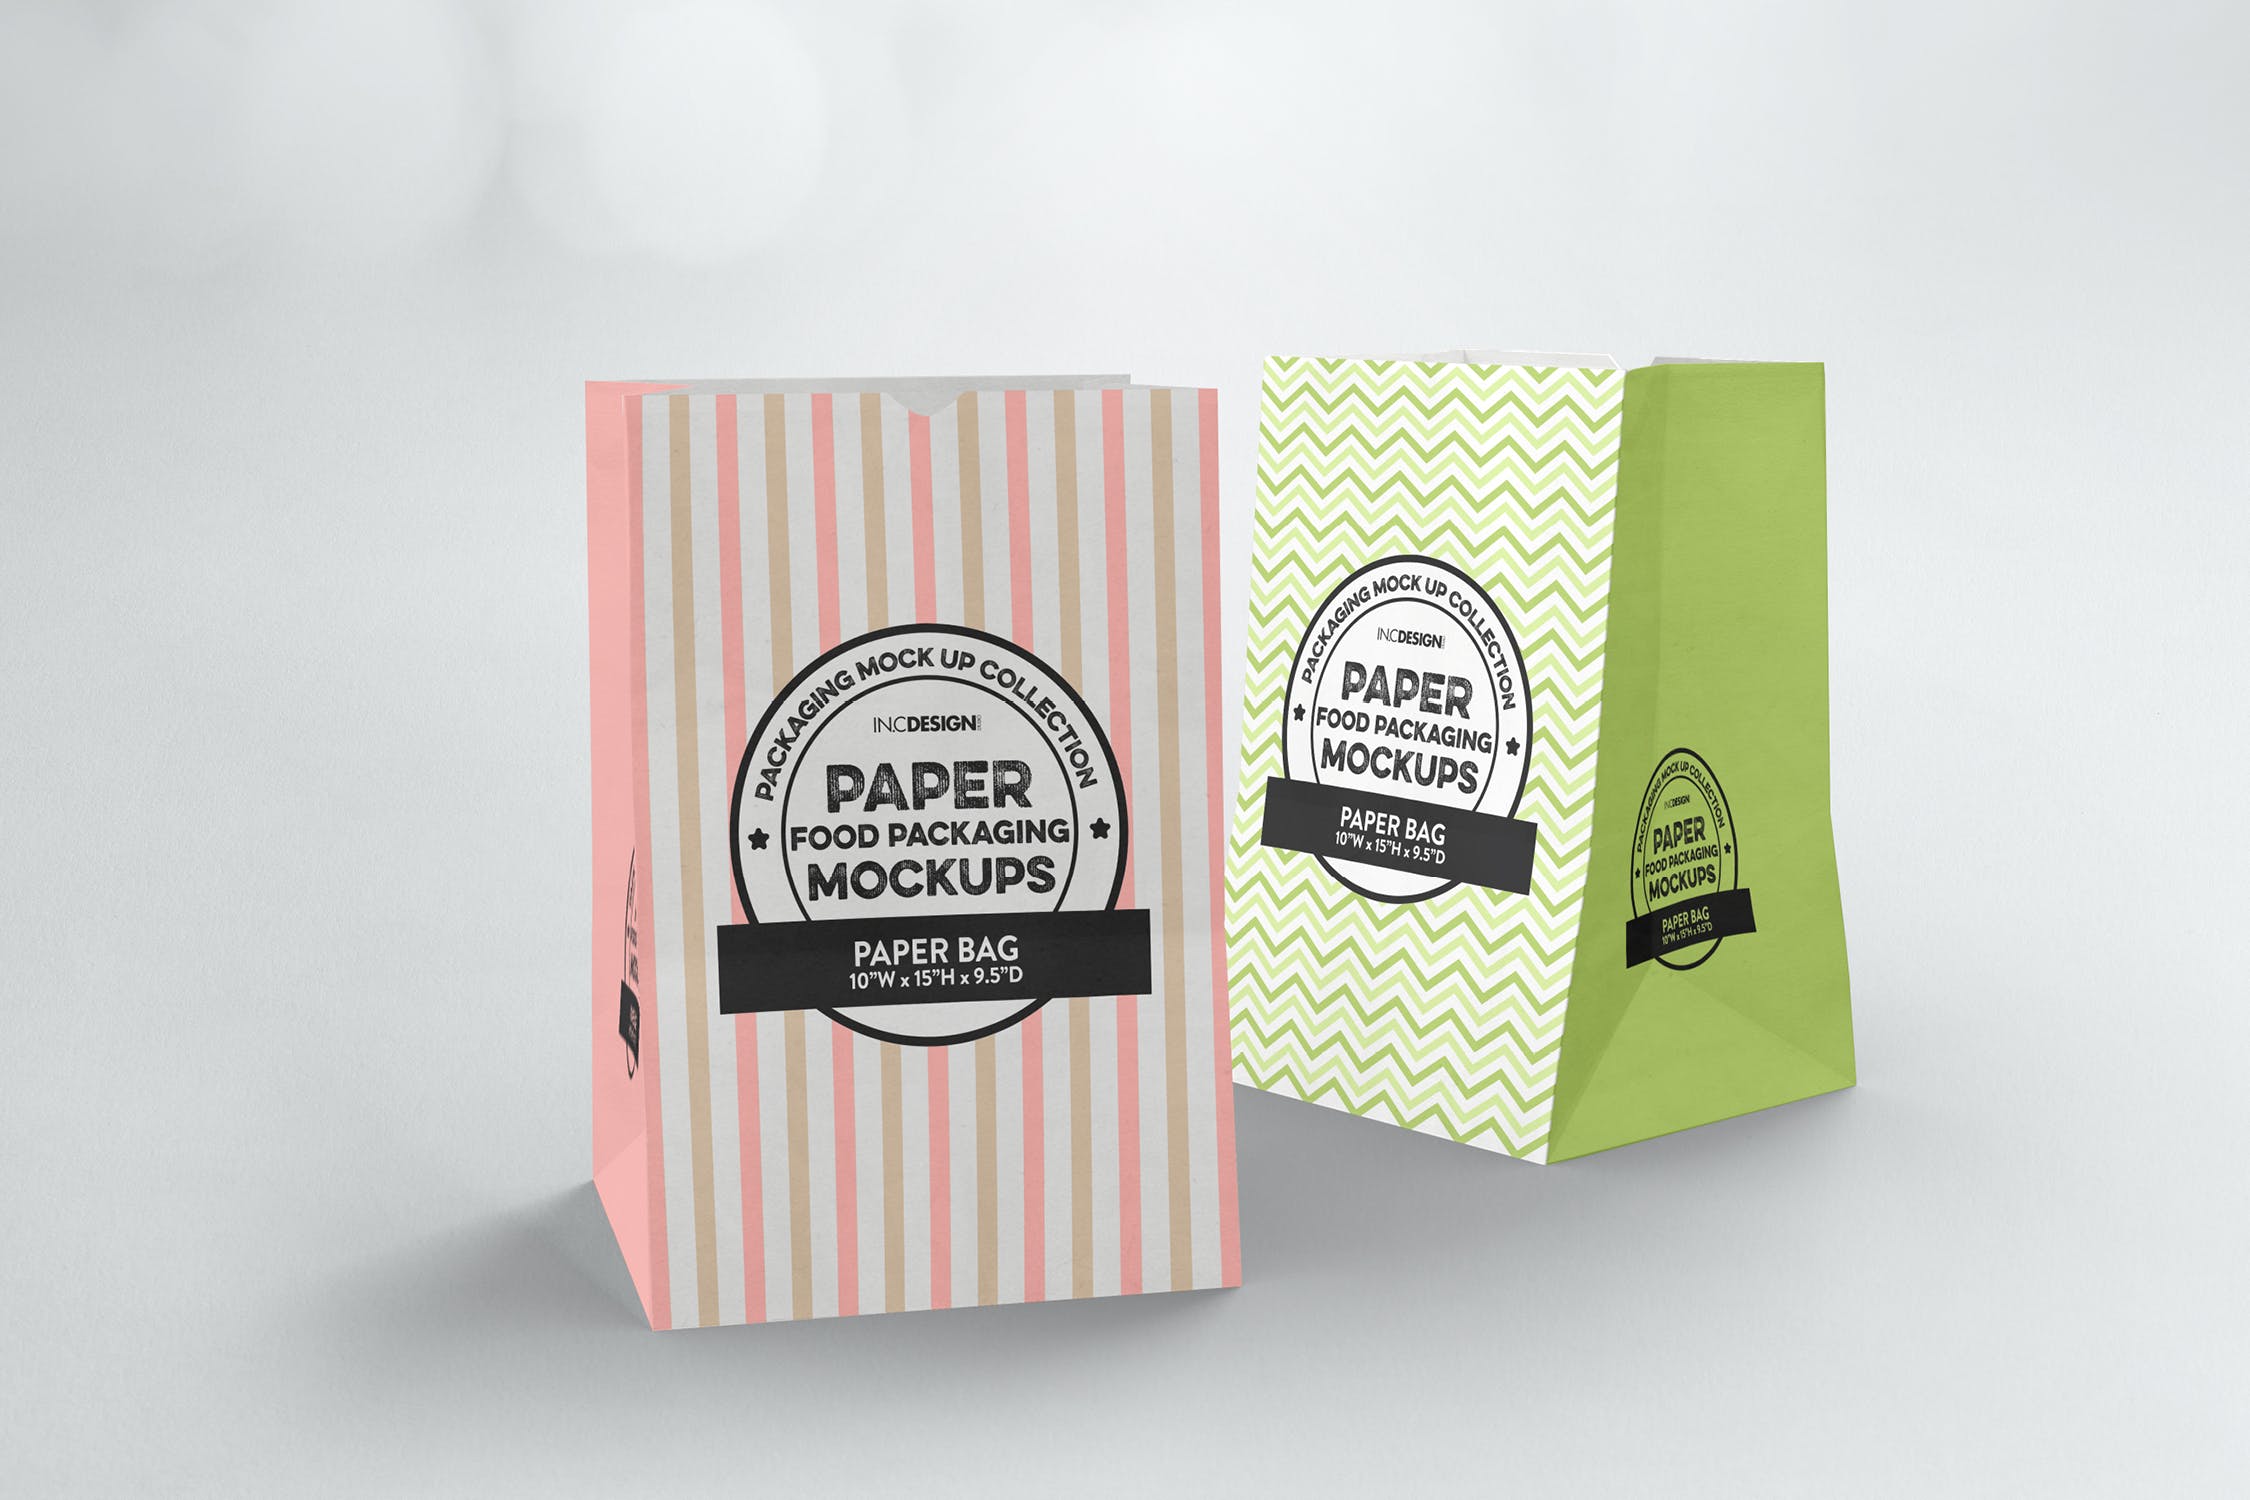 杂货纸袋包装设计效果图蚂蚁素材精选 Grocery Paper Bags Packaging Mockup插图(1)